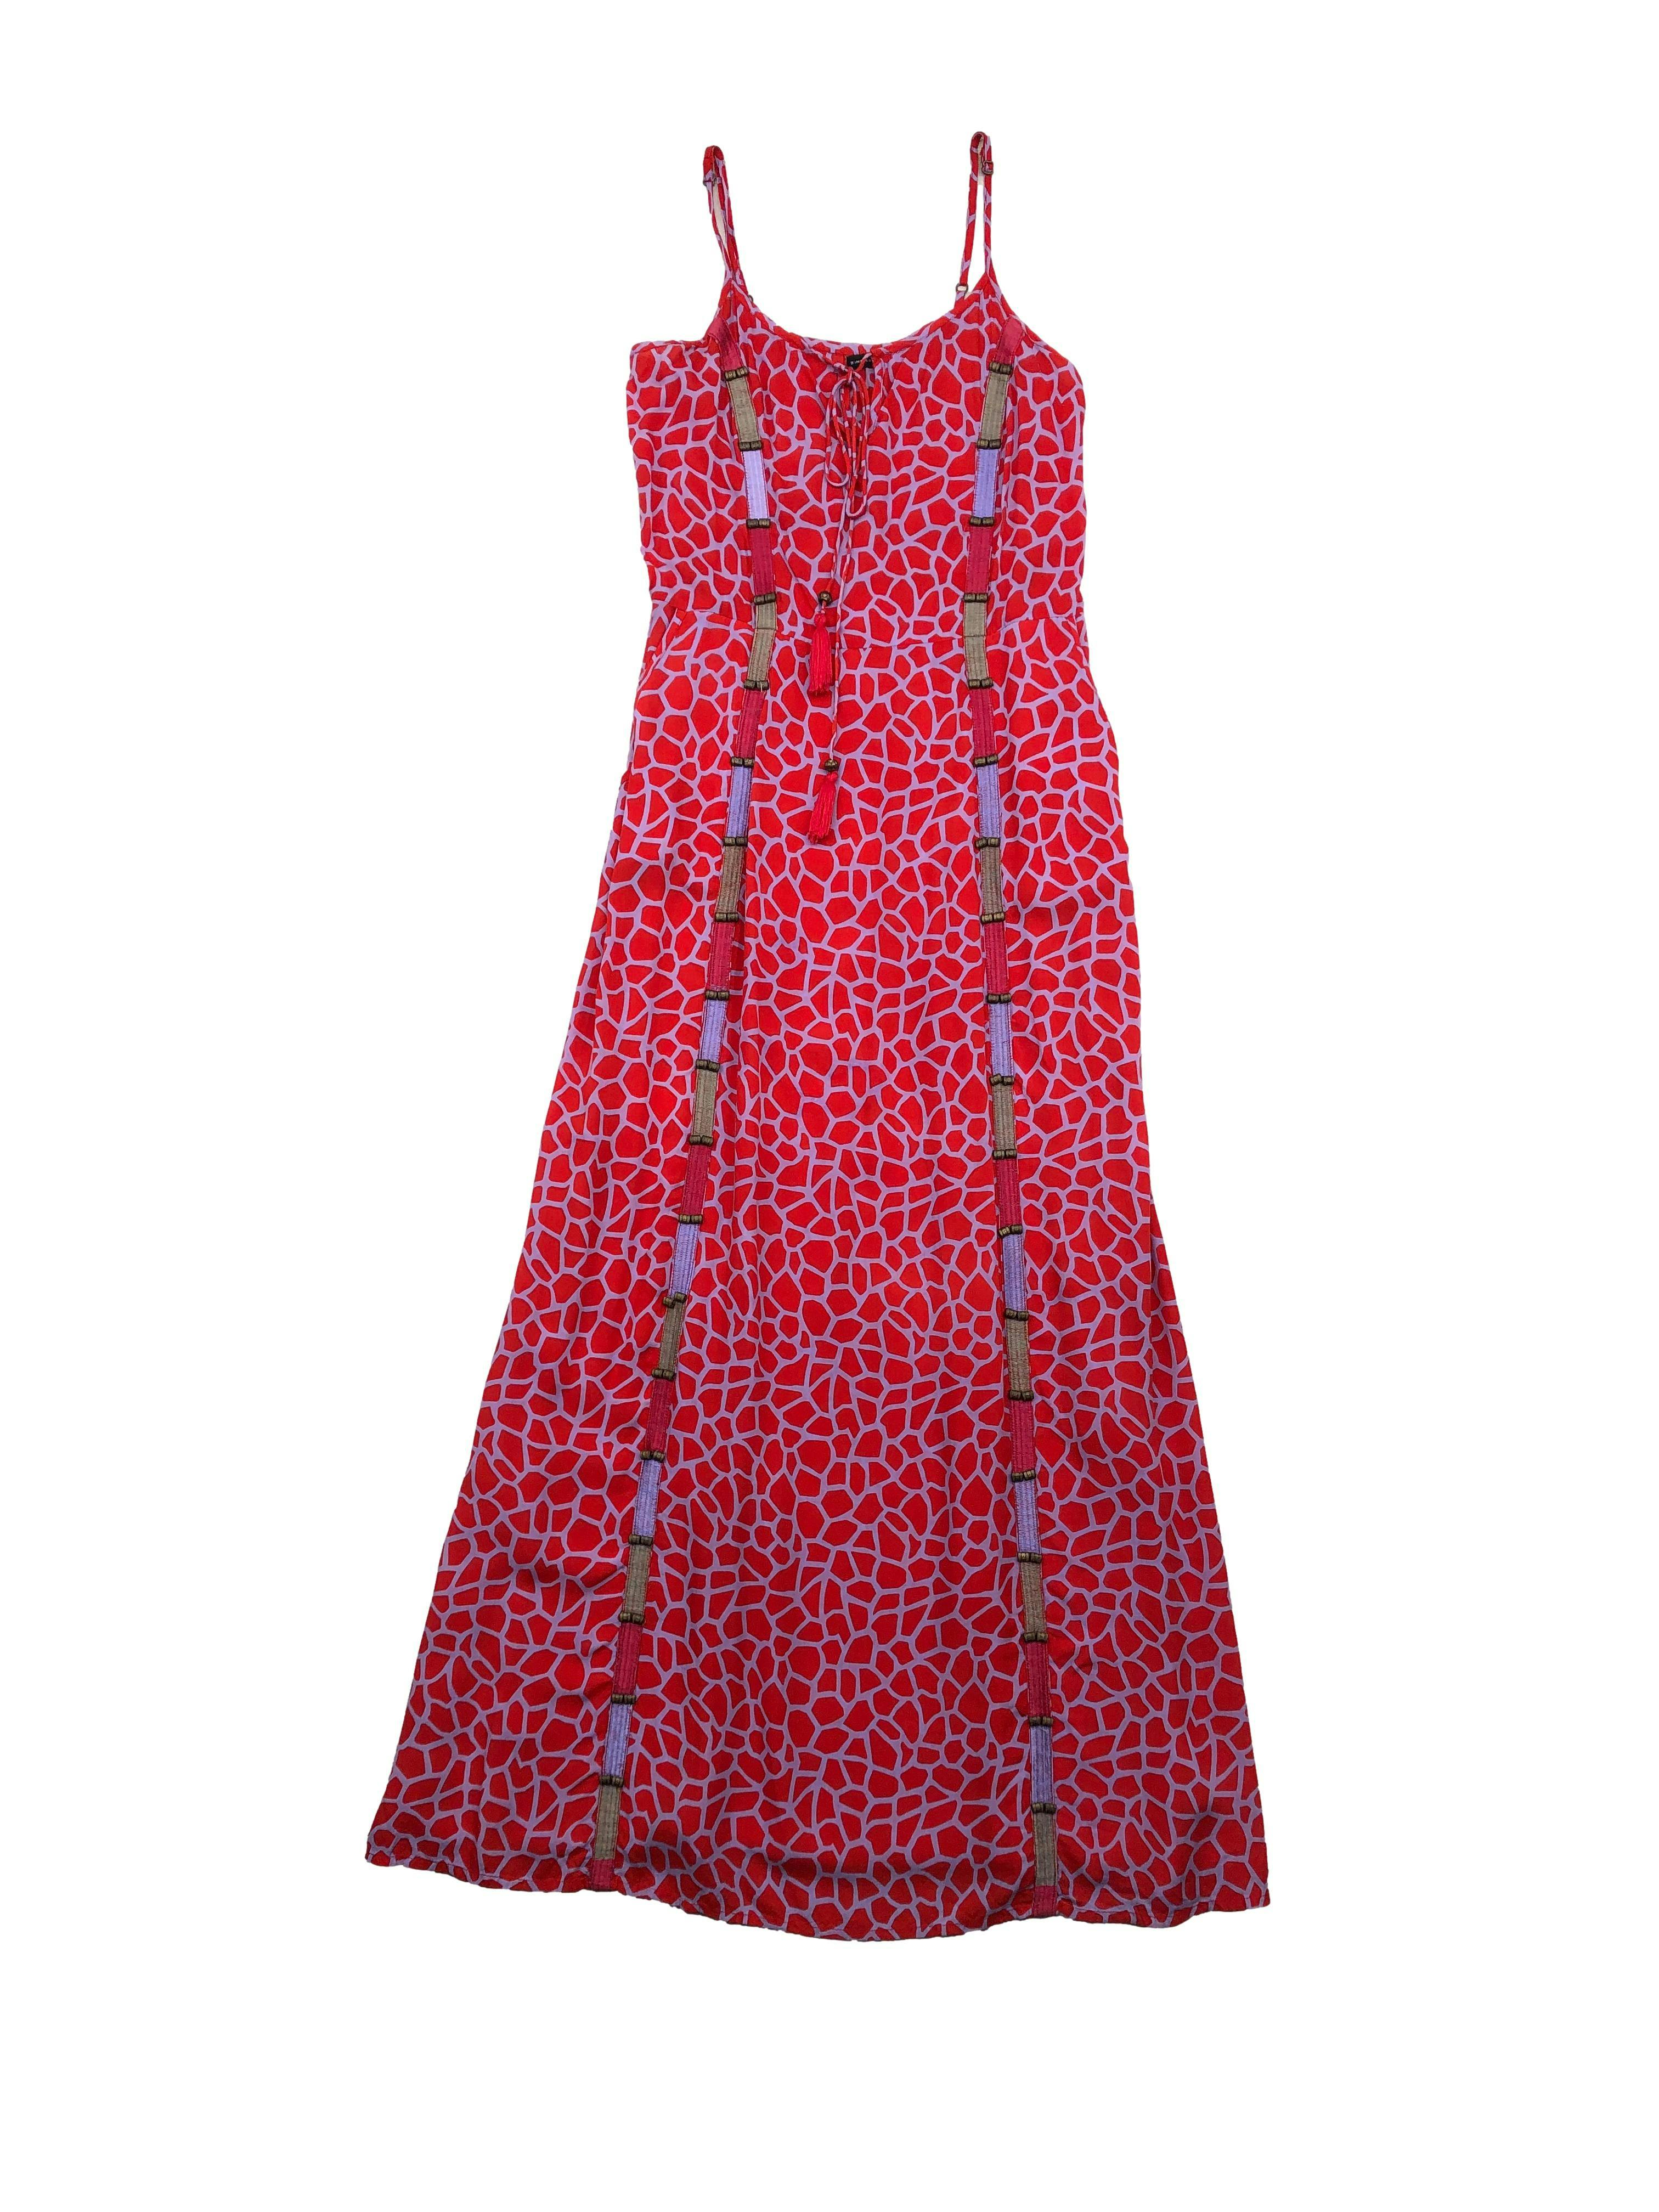 Vestido Zingara lila con estampado rojo, bordado y aplicaciones a lo largo, tiritas regulables y cintura elástica atrás, tela tipo chalis. Busto 90-96cm Largo 135cm